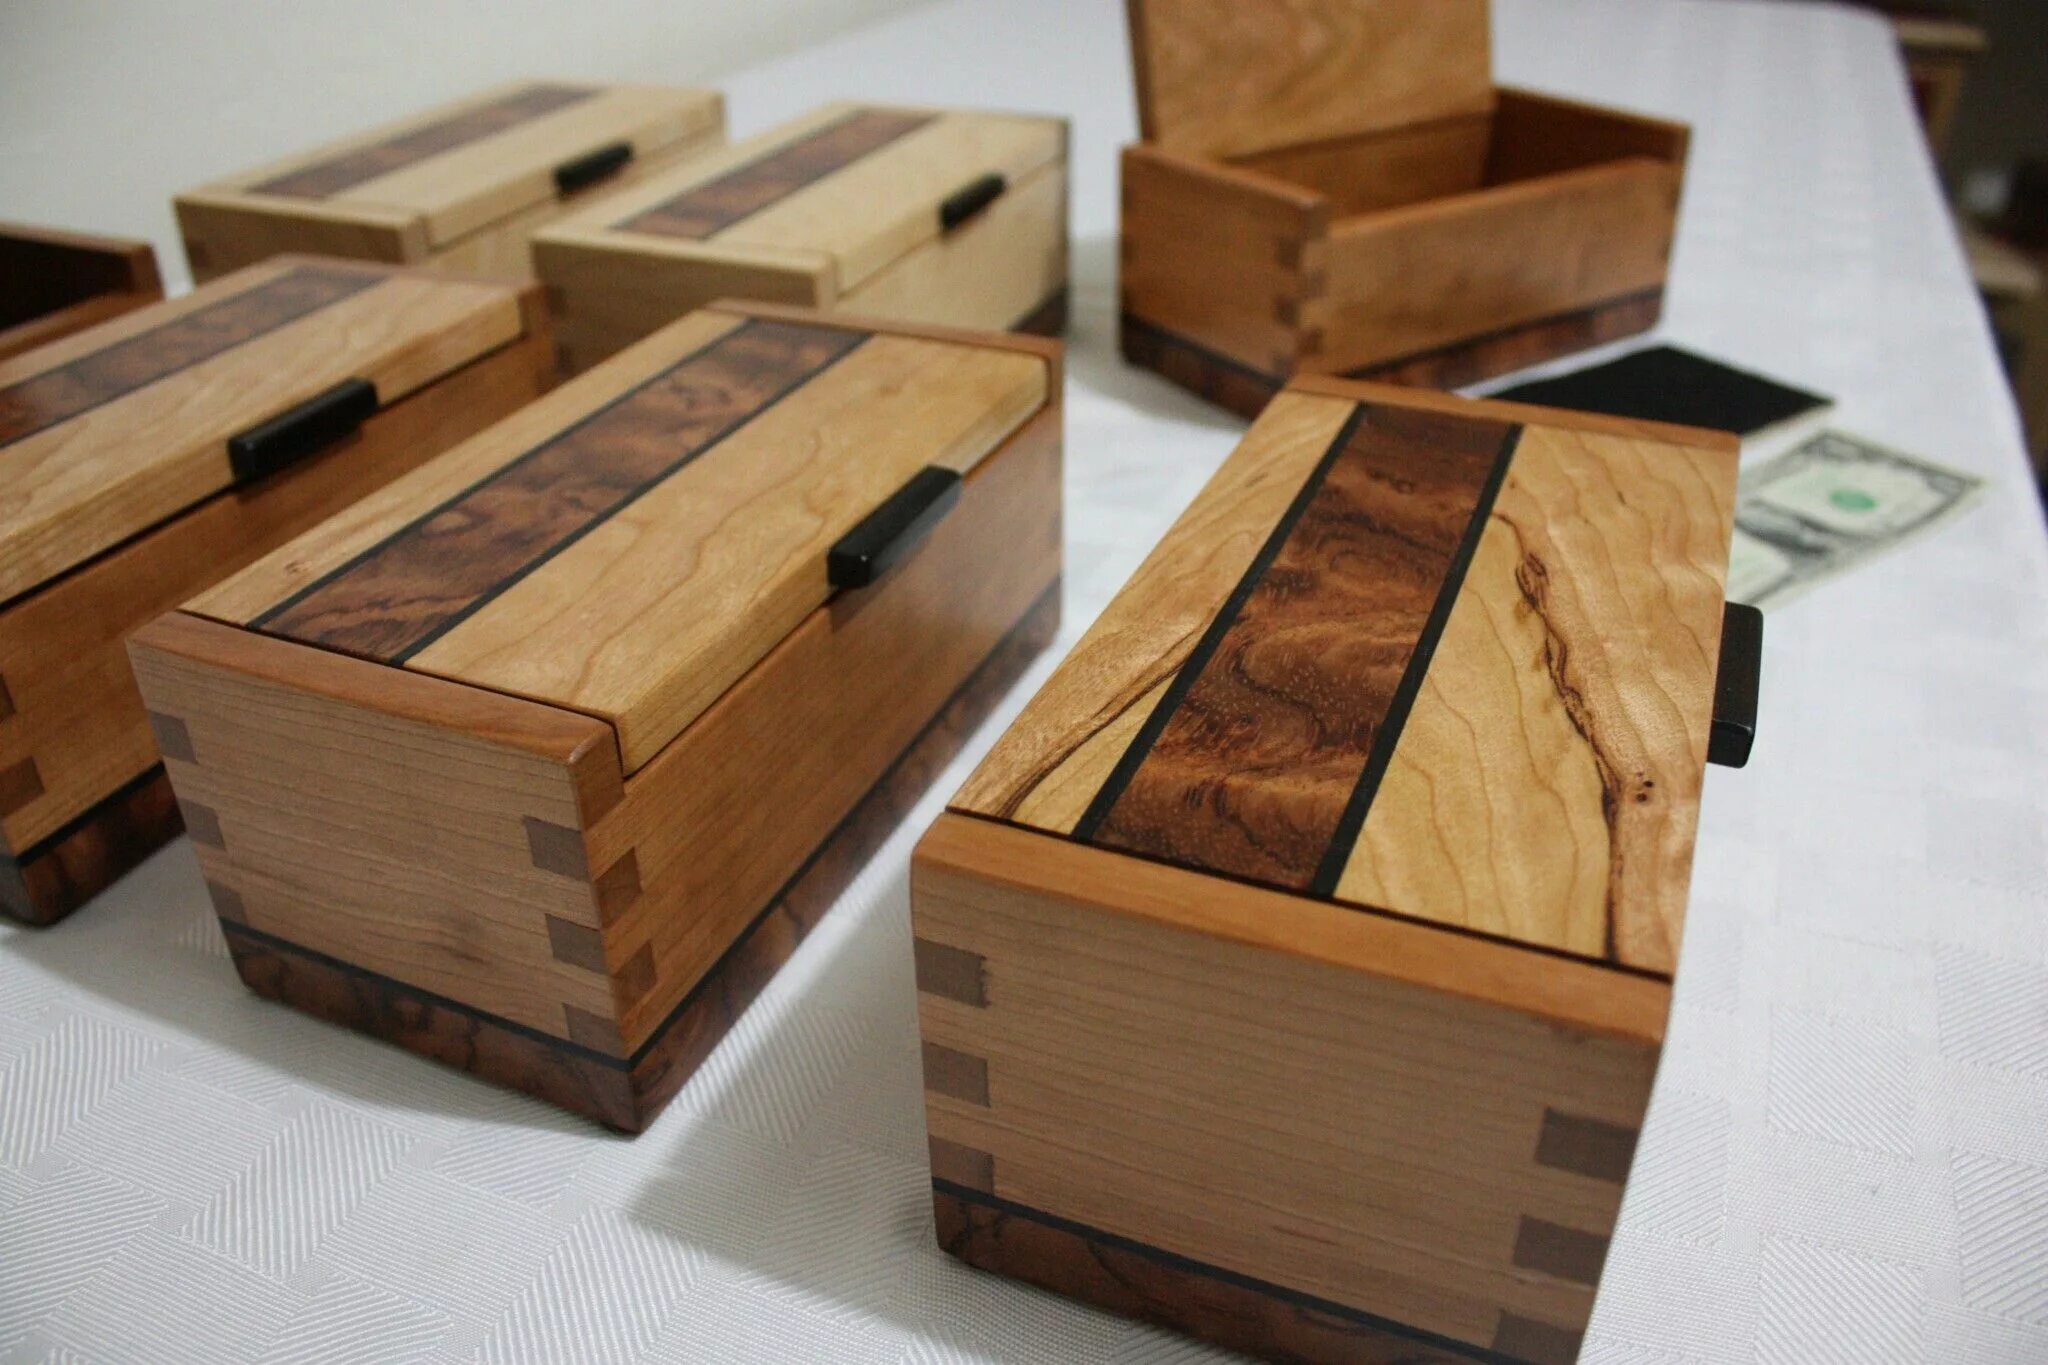 More wooden most wooden. Изделия из древесины. Маленькие деревянные изделия. Современные изделия из дерева. Деревянные столярные изделия.